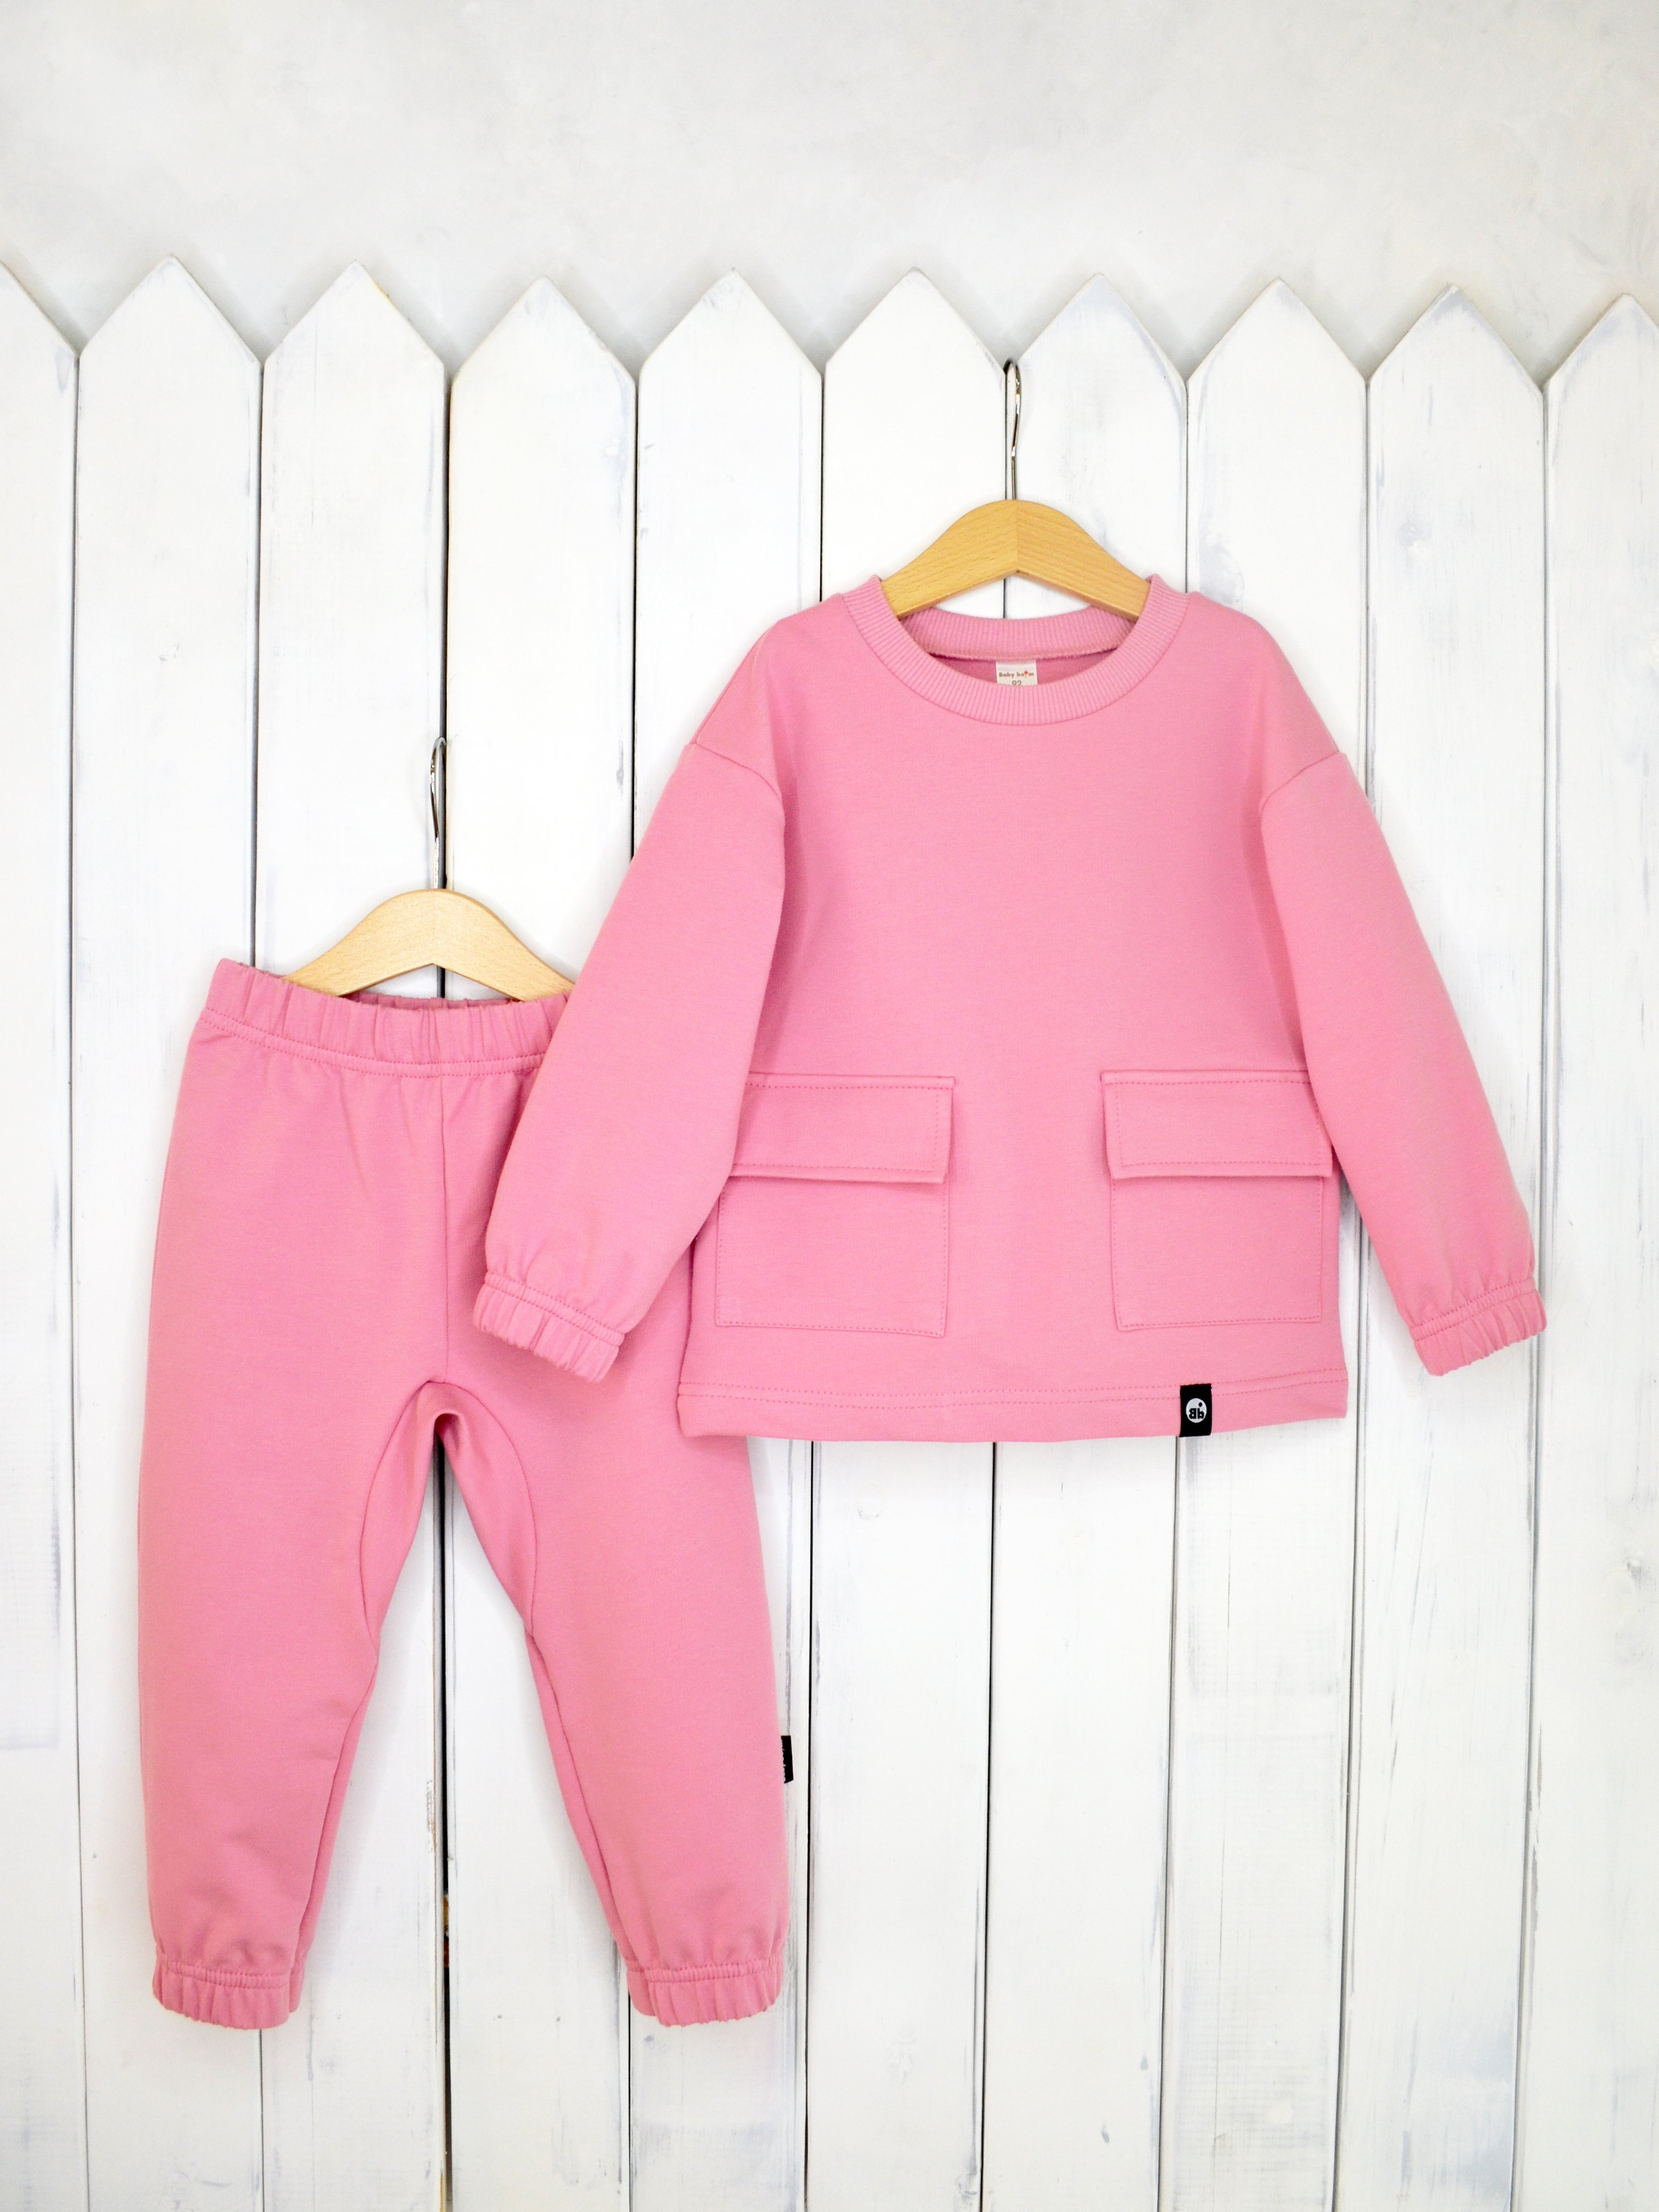 КД326/3-Ф Комплект детский джемпер+брюки цвет: розовый зефир р.98 Бэби Бум - Магнитогорск 